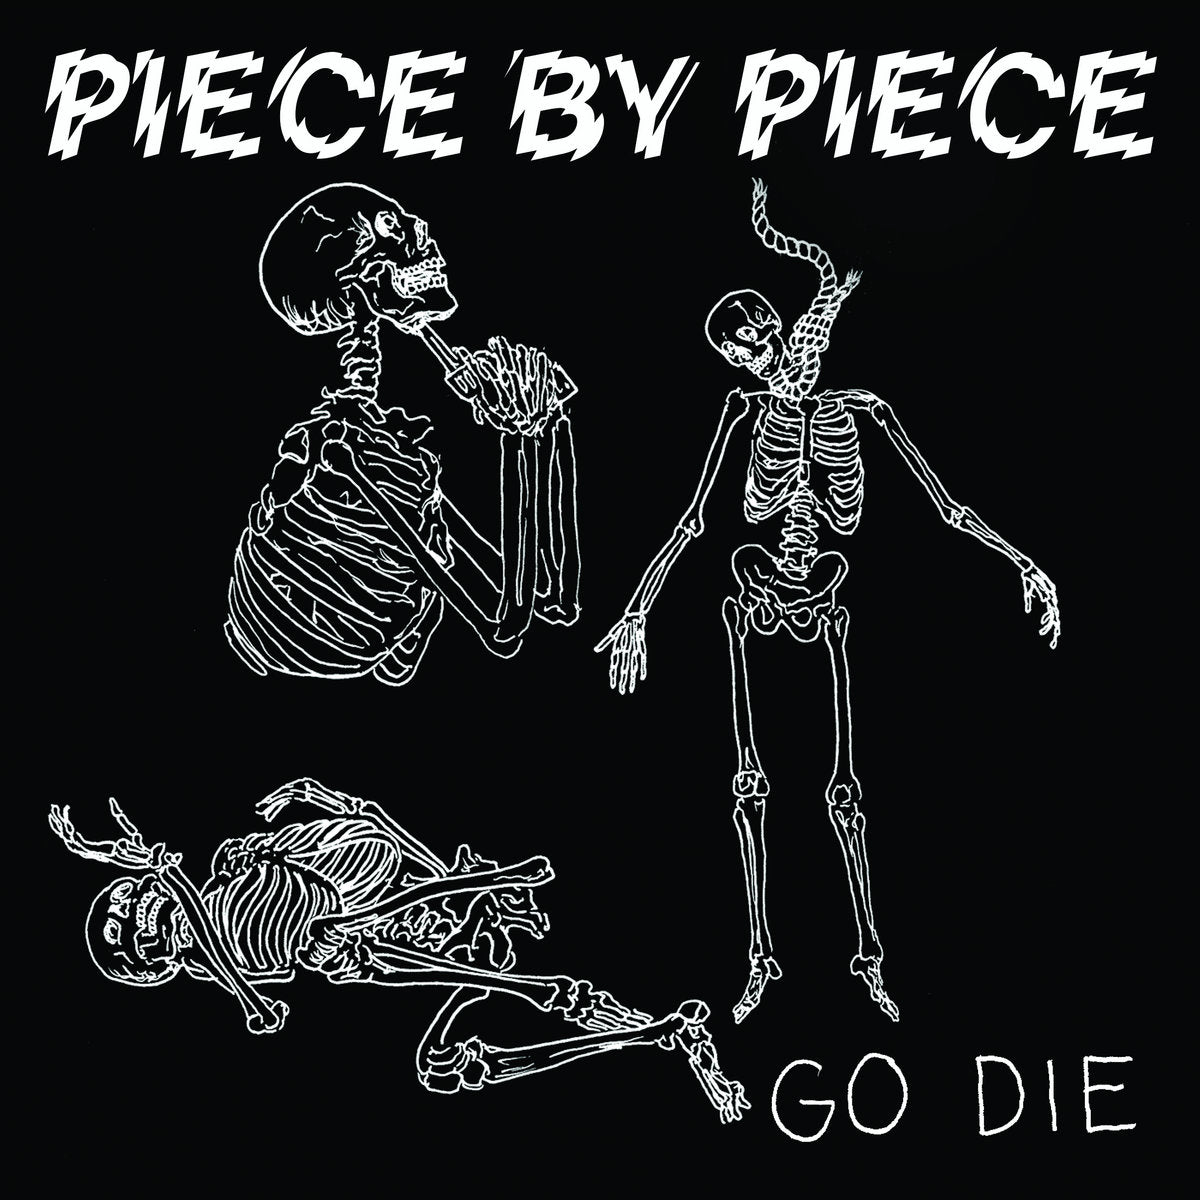 PIECE BY PIECE 'Go Die' 7" / ORANGE FLEXI DISC EDITION